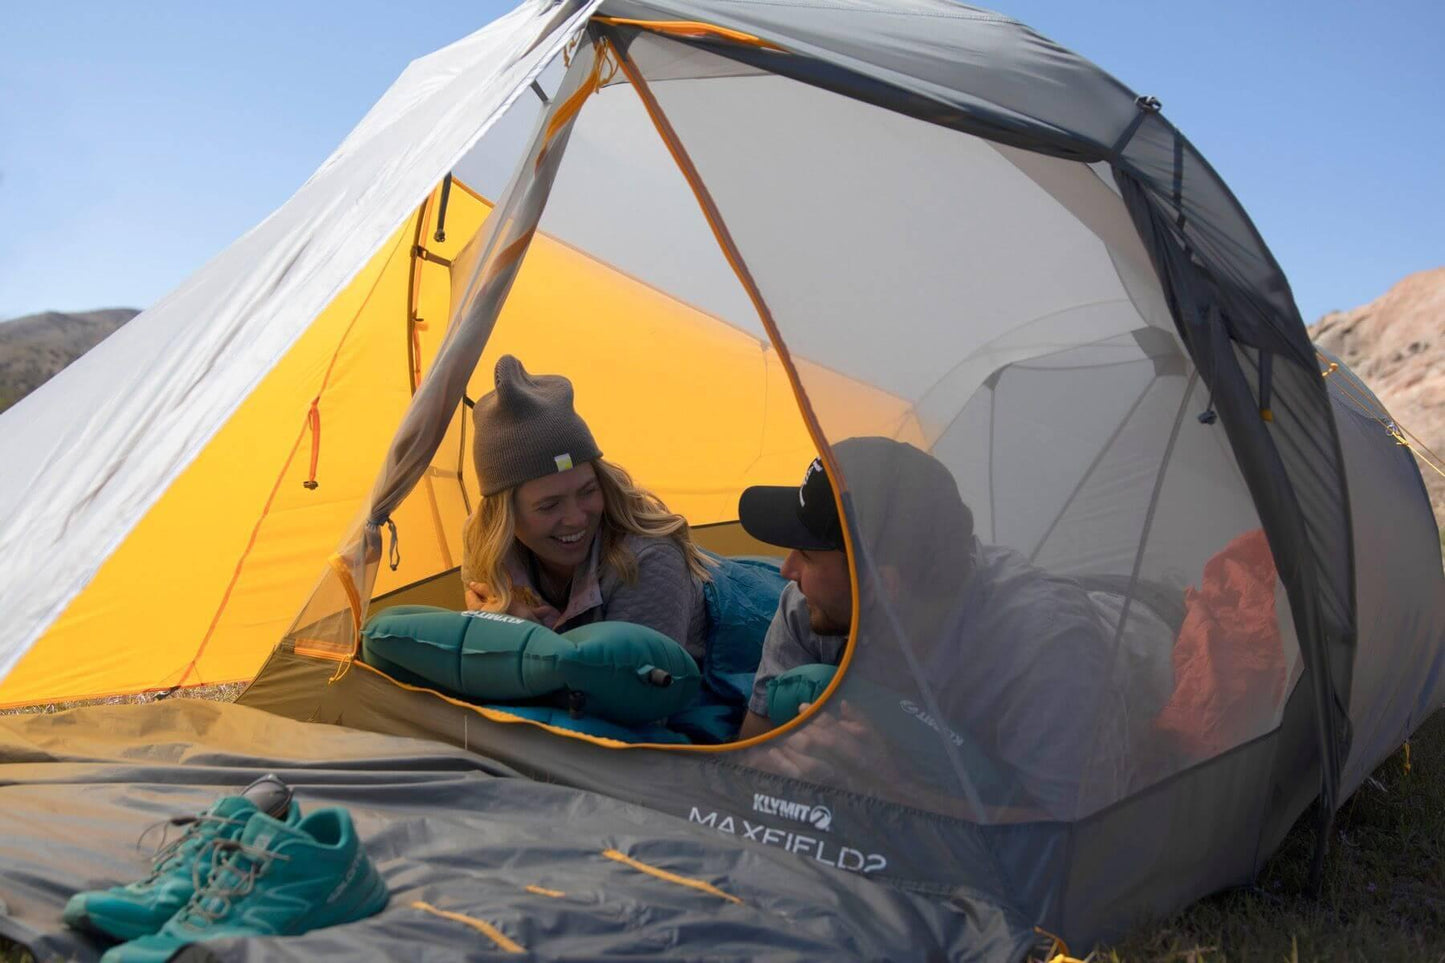 Klymit Maxfield 2 Tent (Tält) från Klymit. | TacNGear - Utrustning för polis och militär och outdoor.